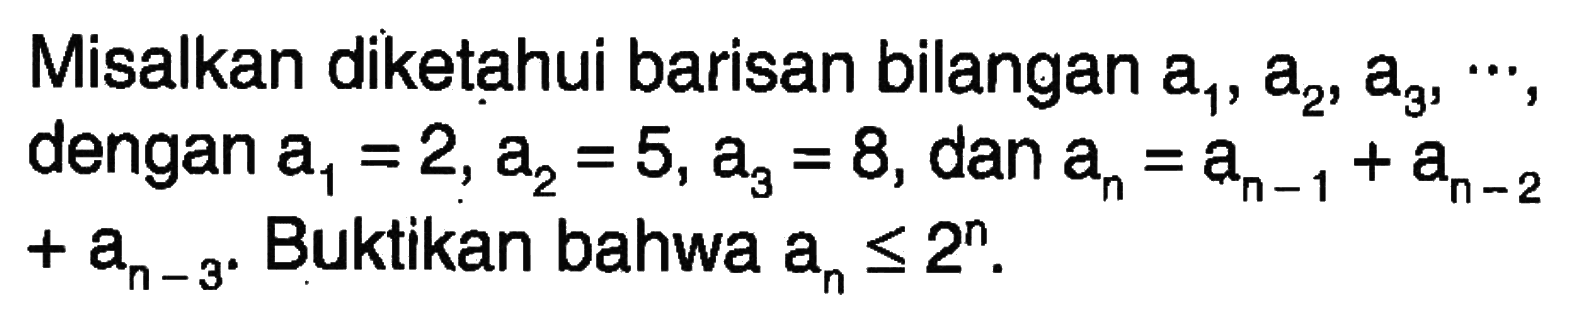 Misalkan diketahui barisan bilangan a1, a2, a3, ..., dengan a1=2, a2=5, a3=8, dan an=a(n-1)+a(n-2)+a(n-3). Buktikan bahwa an<=2^n.